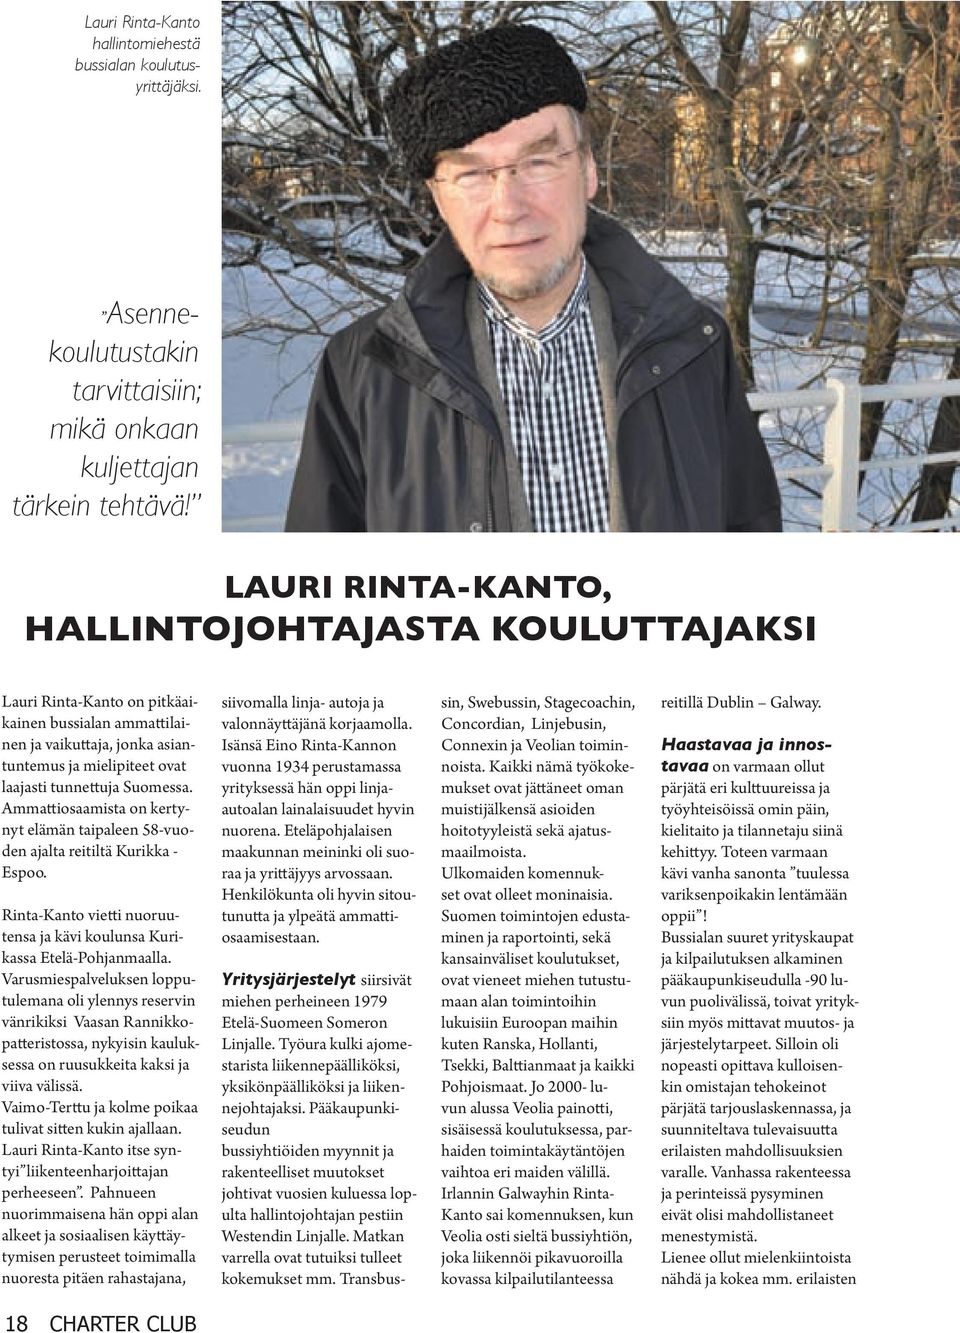 Ammattiosaamista on kertynyt elämän taipaleen 58-vuoden ajalta reitiltä Kurikka - Espoo. Rinta-Kanto vietti nuoruutensa ja kävi koulunsa Kurikassa Etelä-Pohjanmaalla.